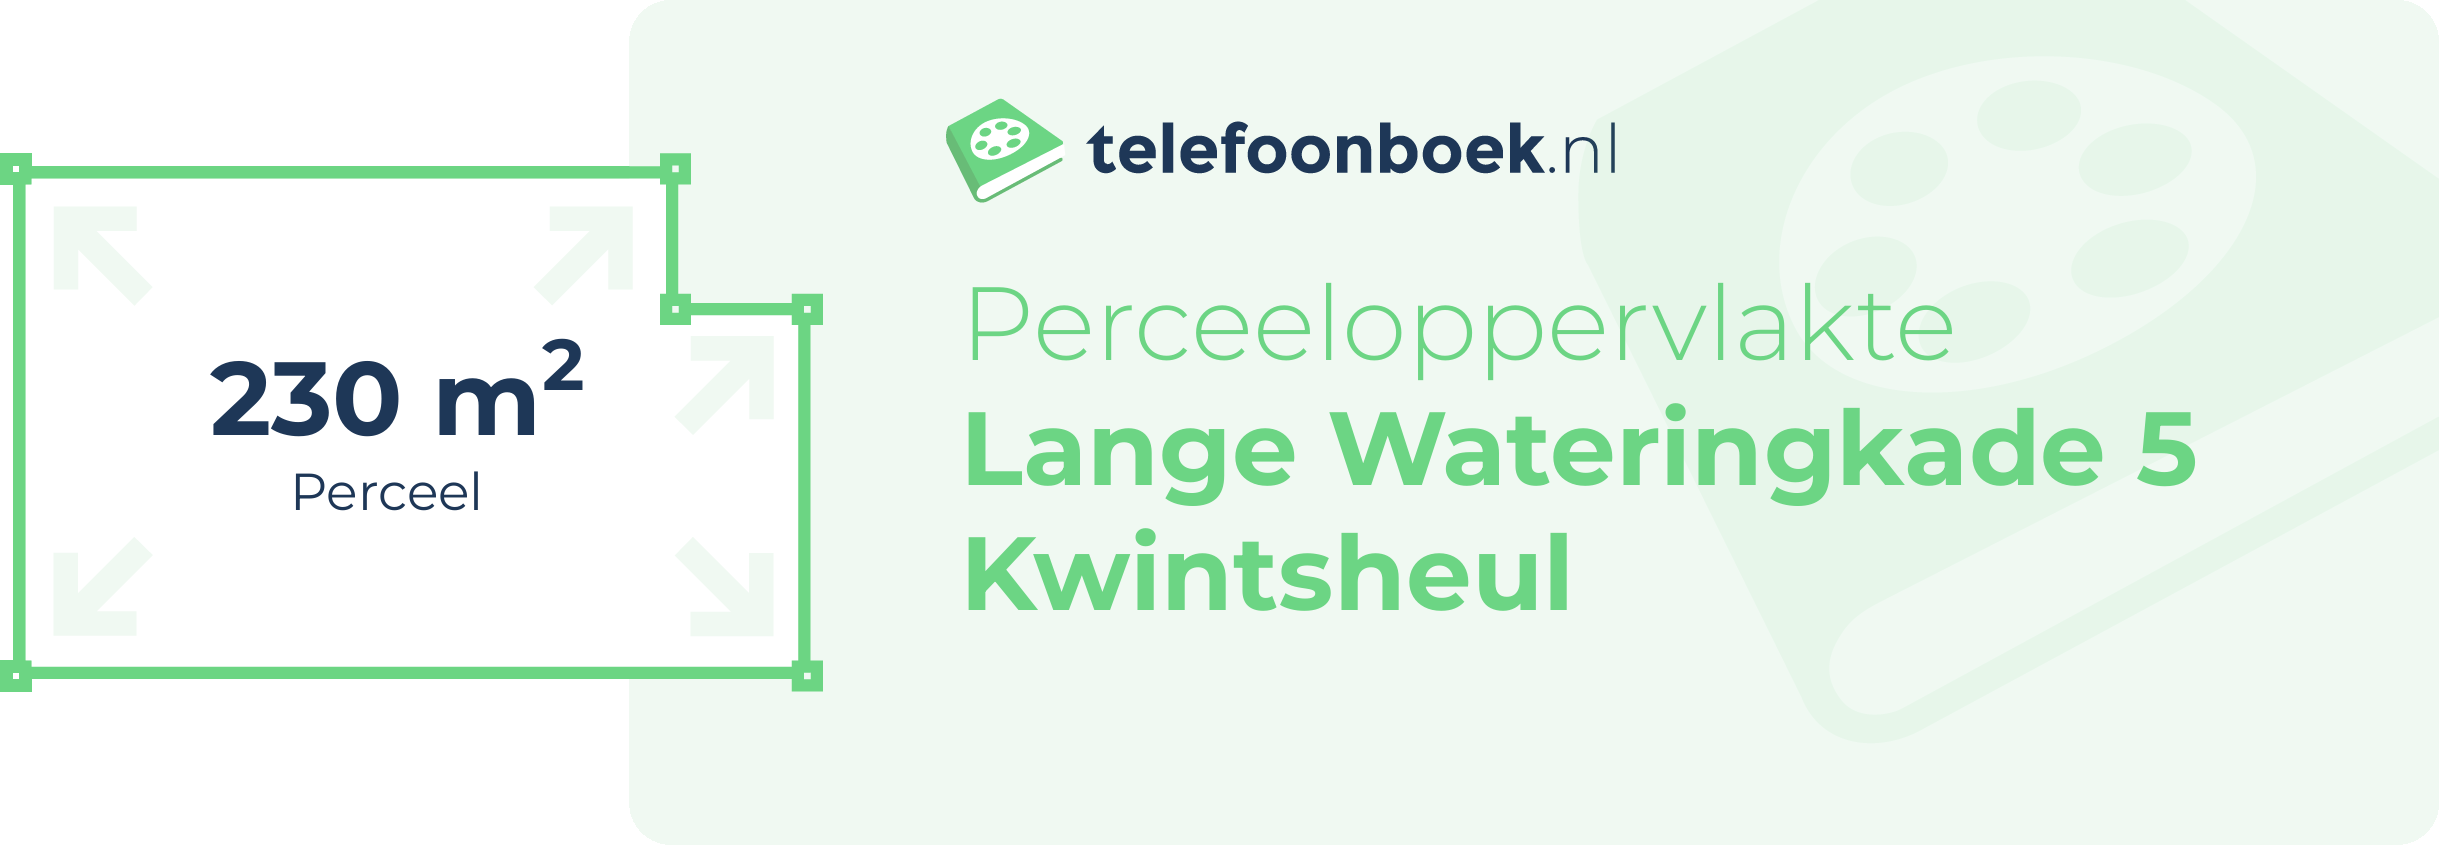 Perceeloppervlakte Lange Wateringkade 5 Kwintsheul